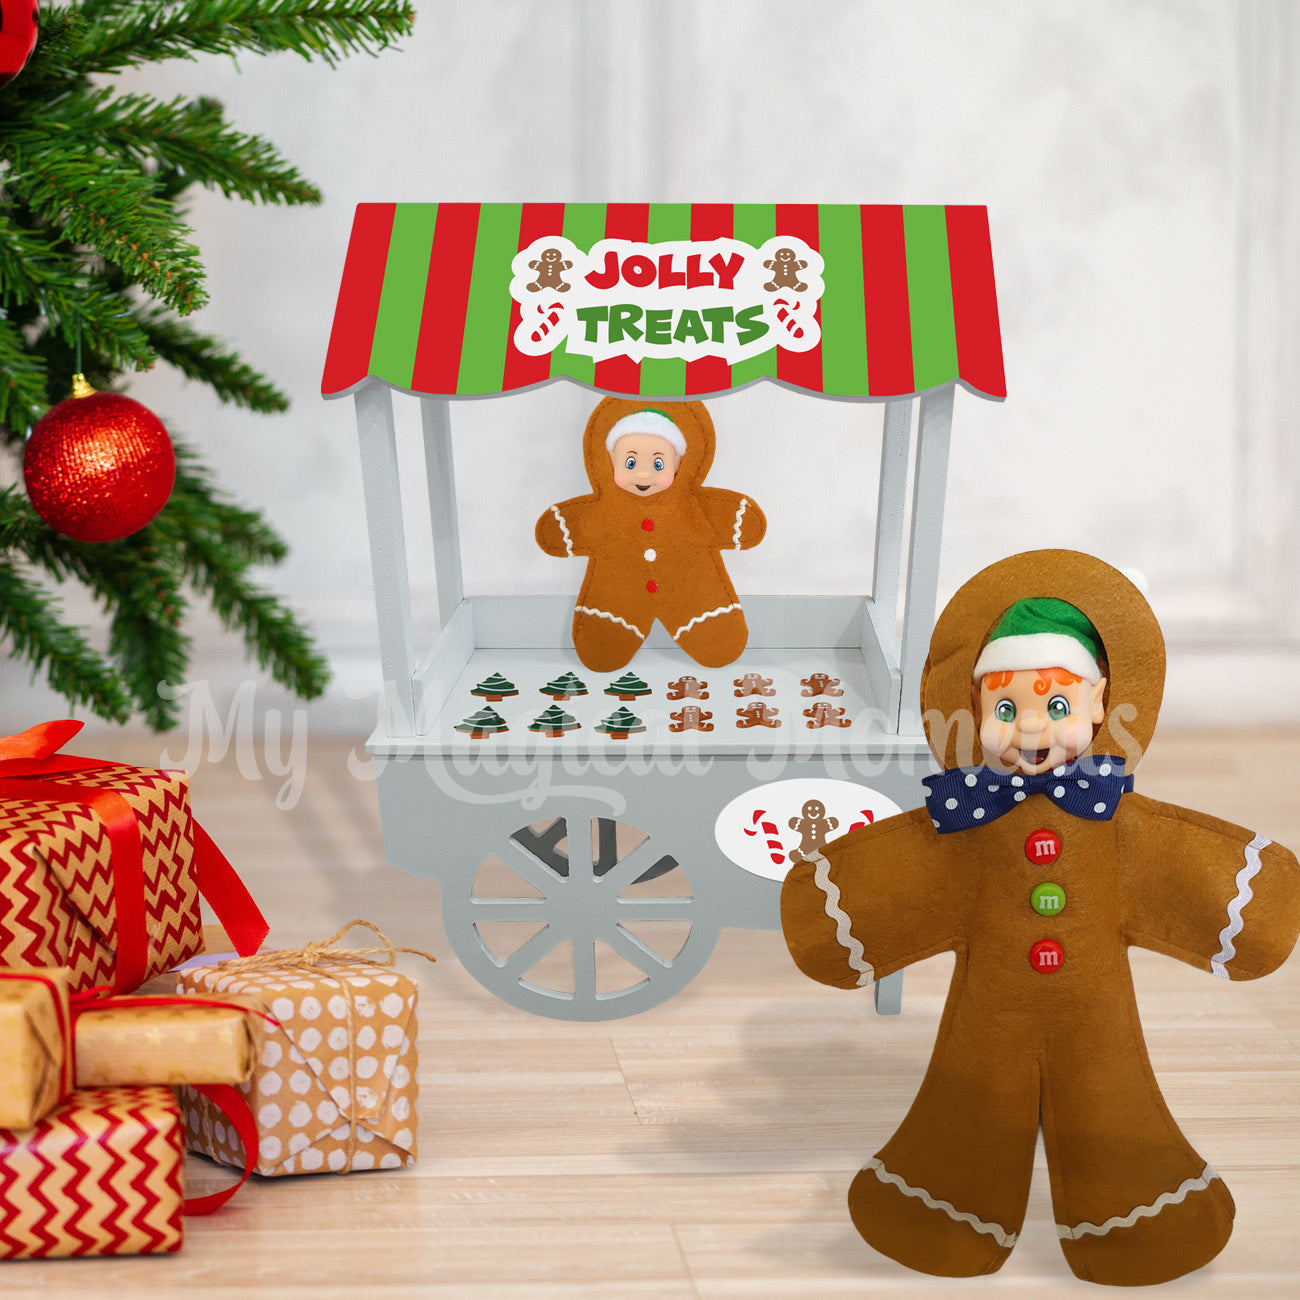 Elf dressed as a gingerbread selling gingerbread cookies